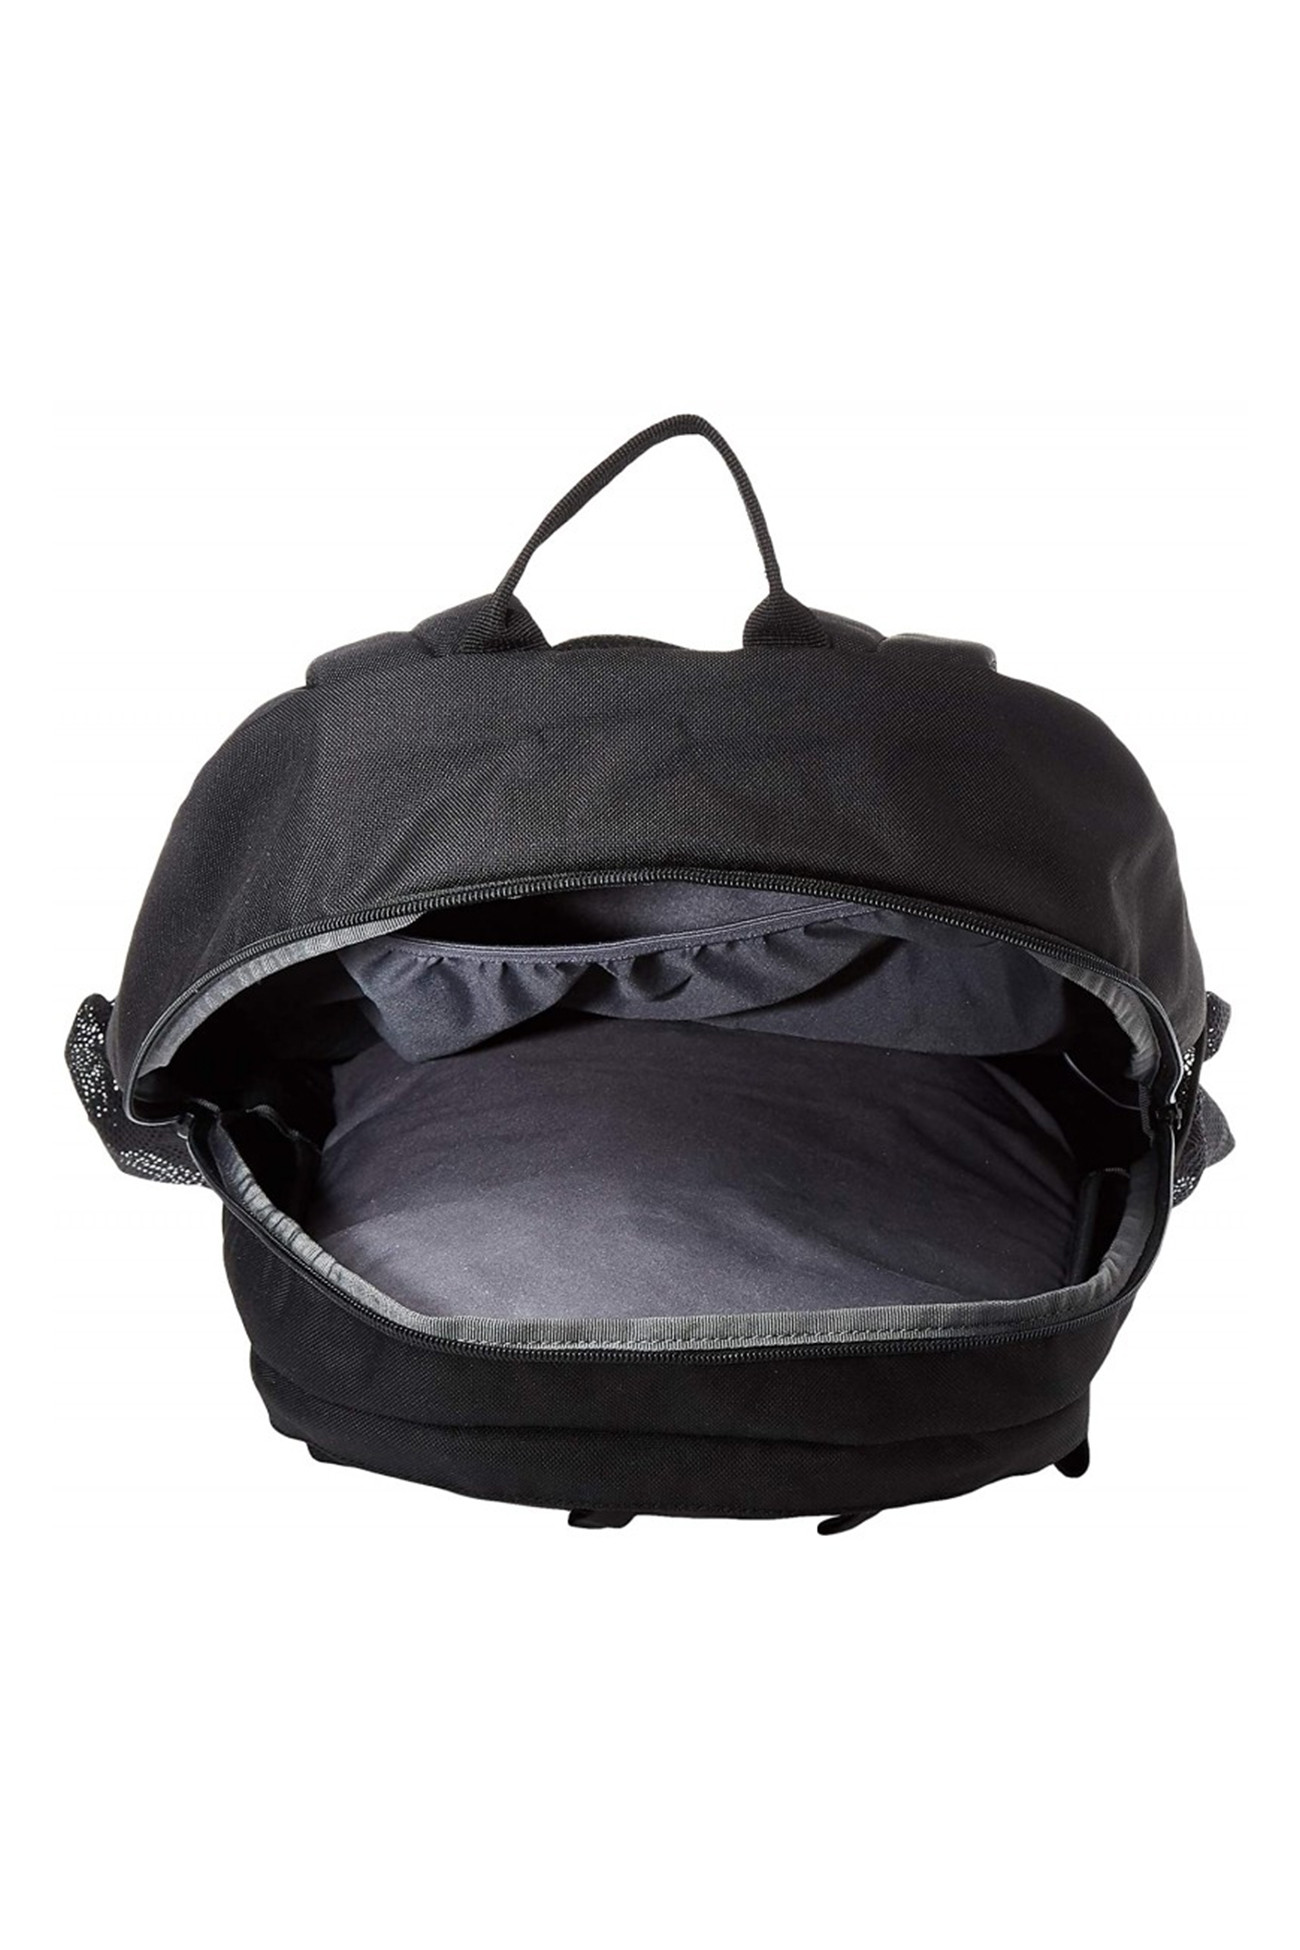 Рюкзак  Puma PUMA Deck Backpack черный 07470601 изображение 2